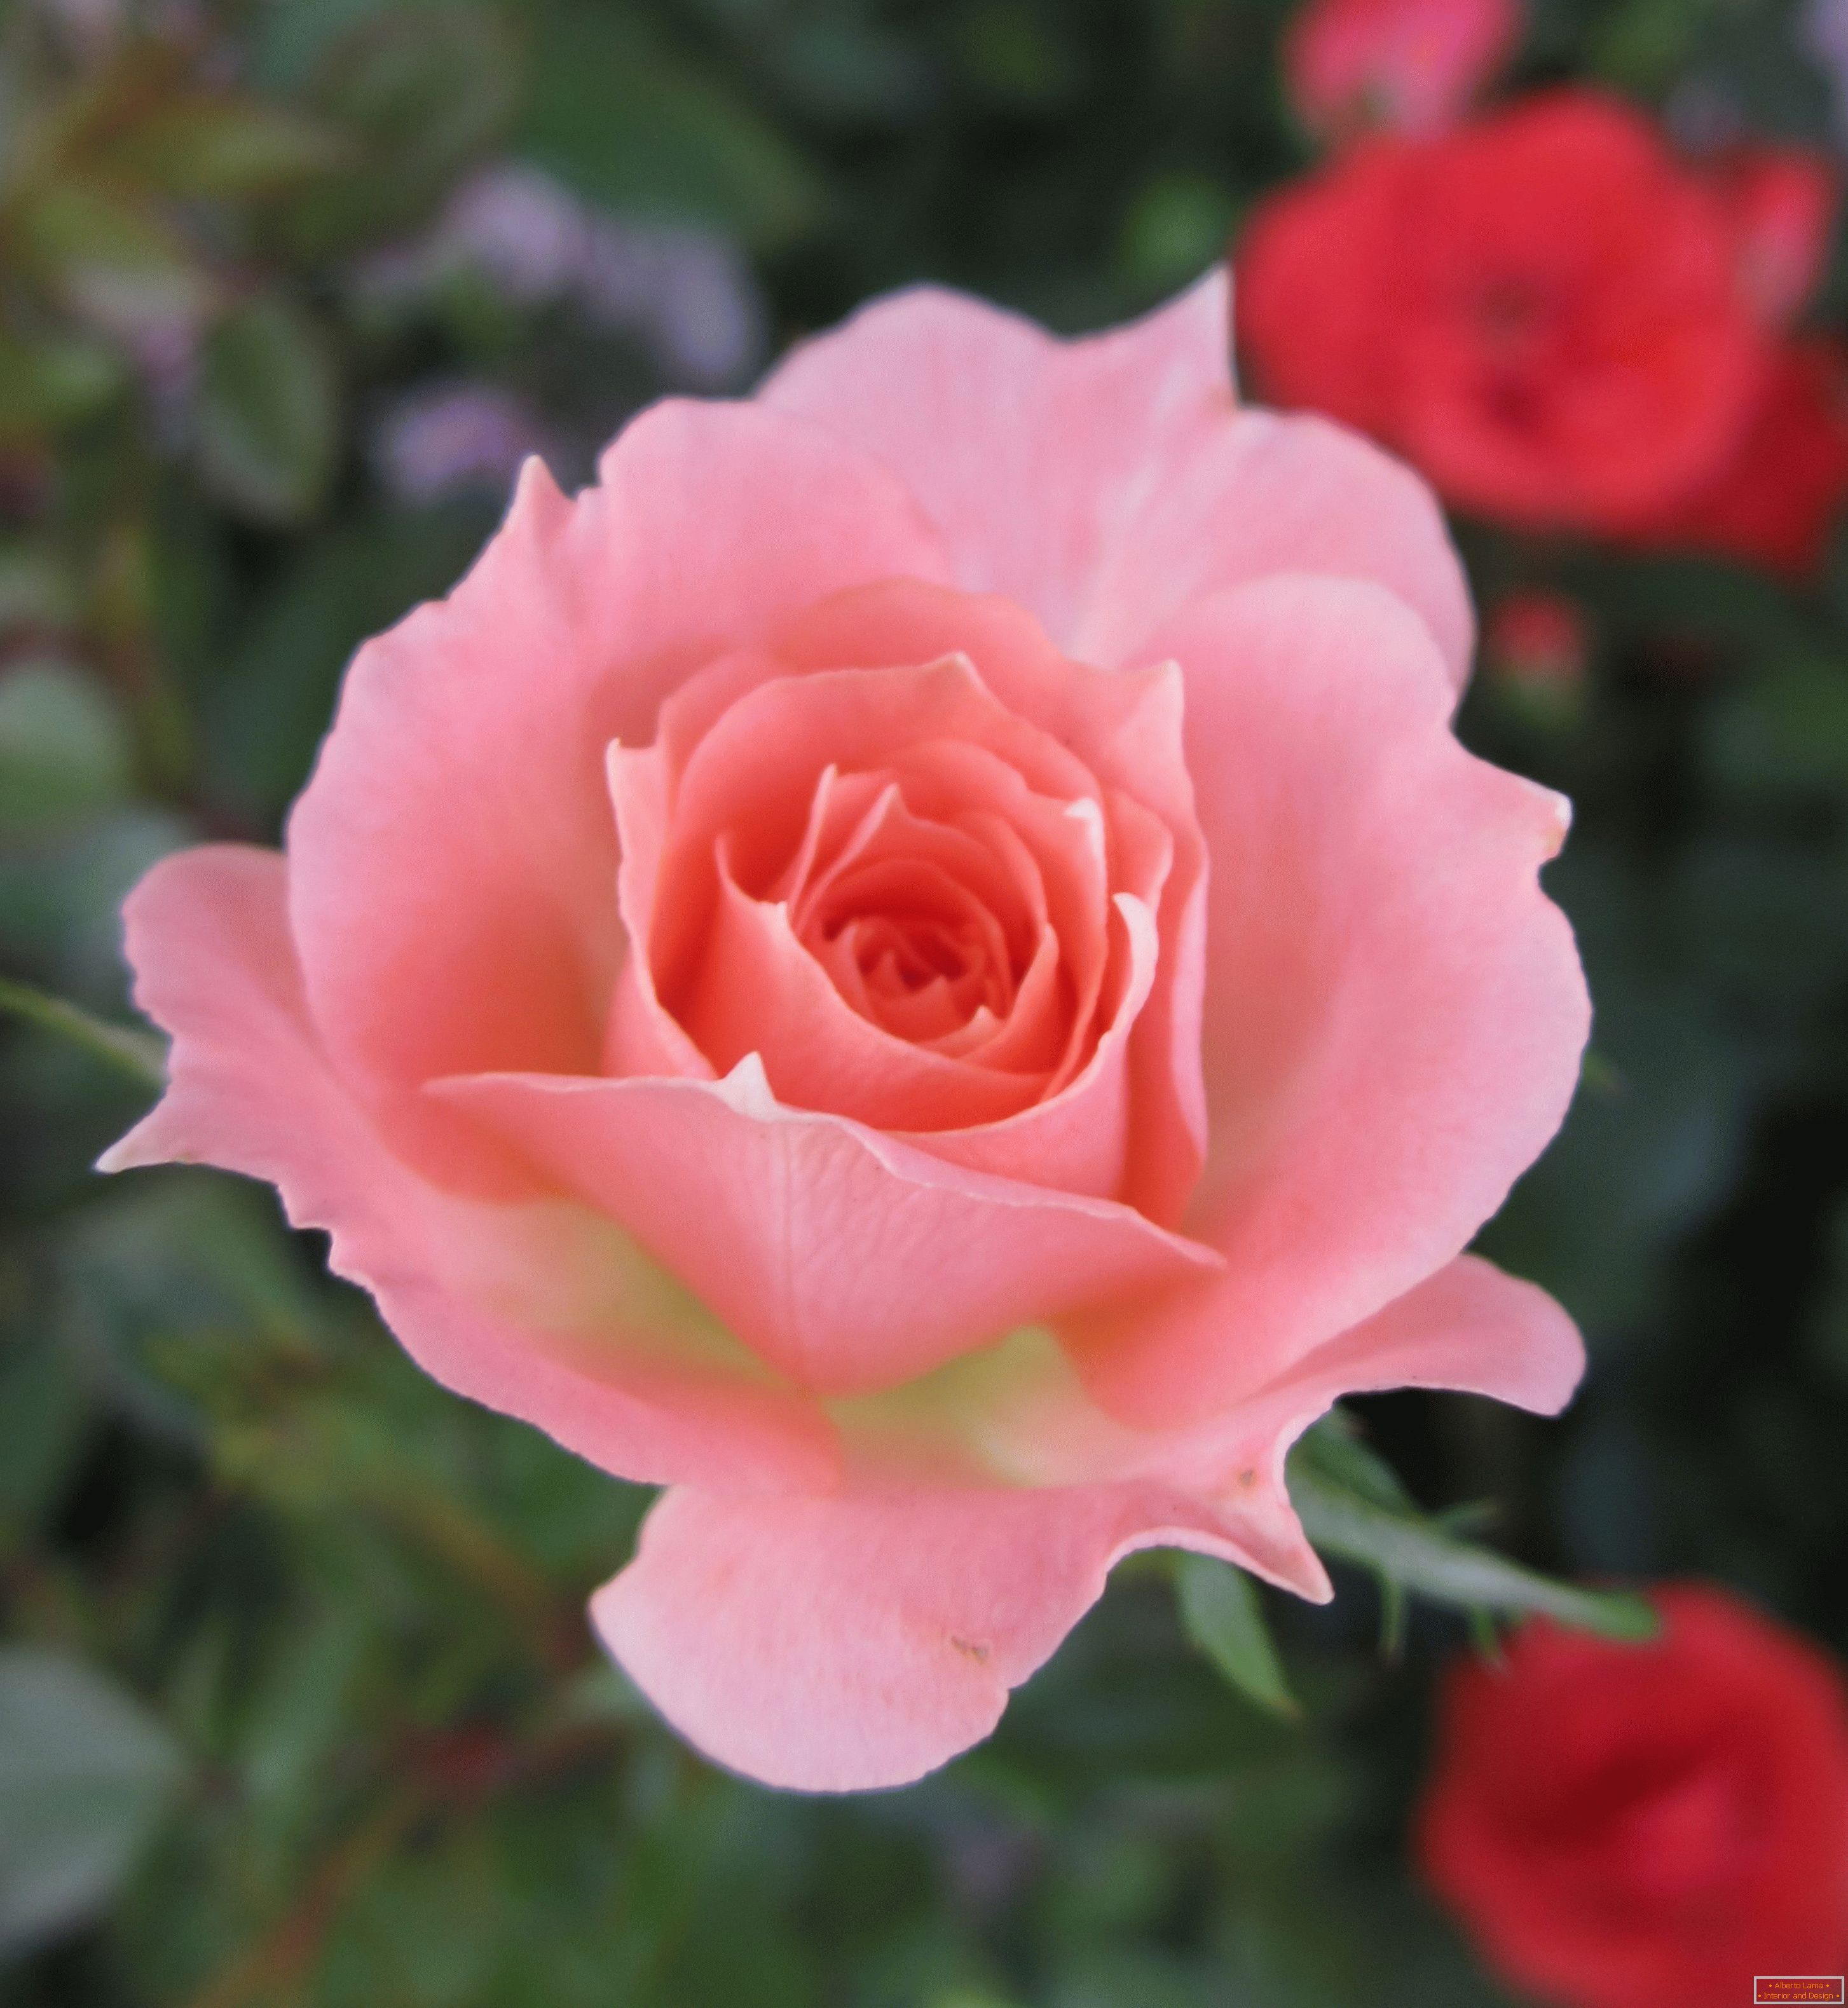 Rose eines rosa Schattens in einer Umgebung von roten Blumen